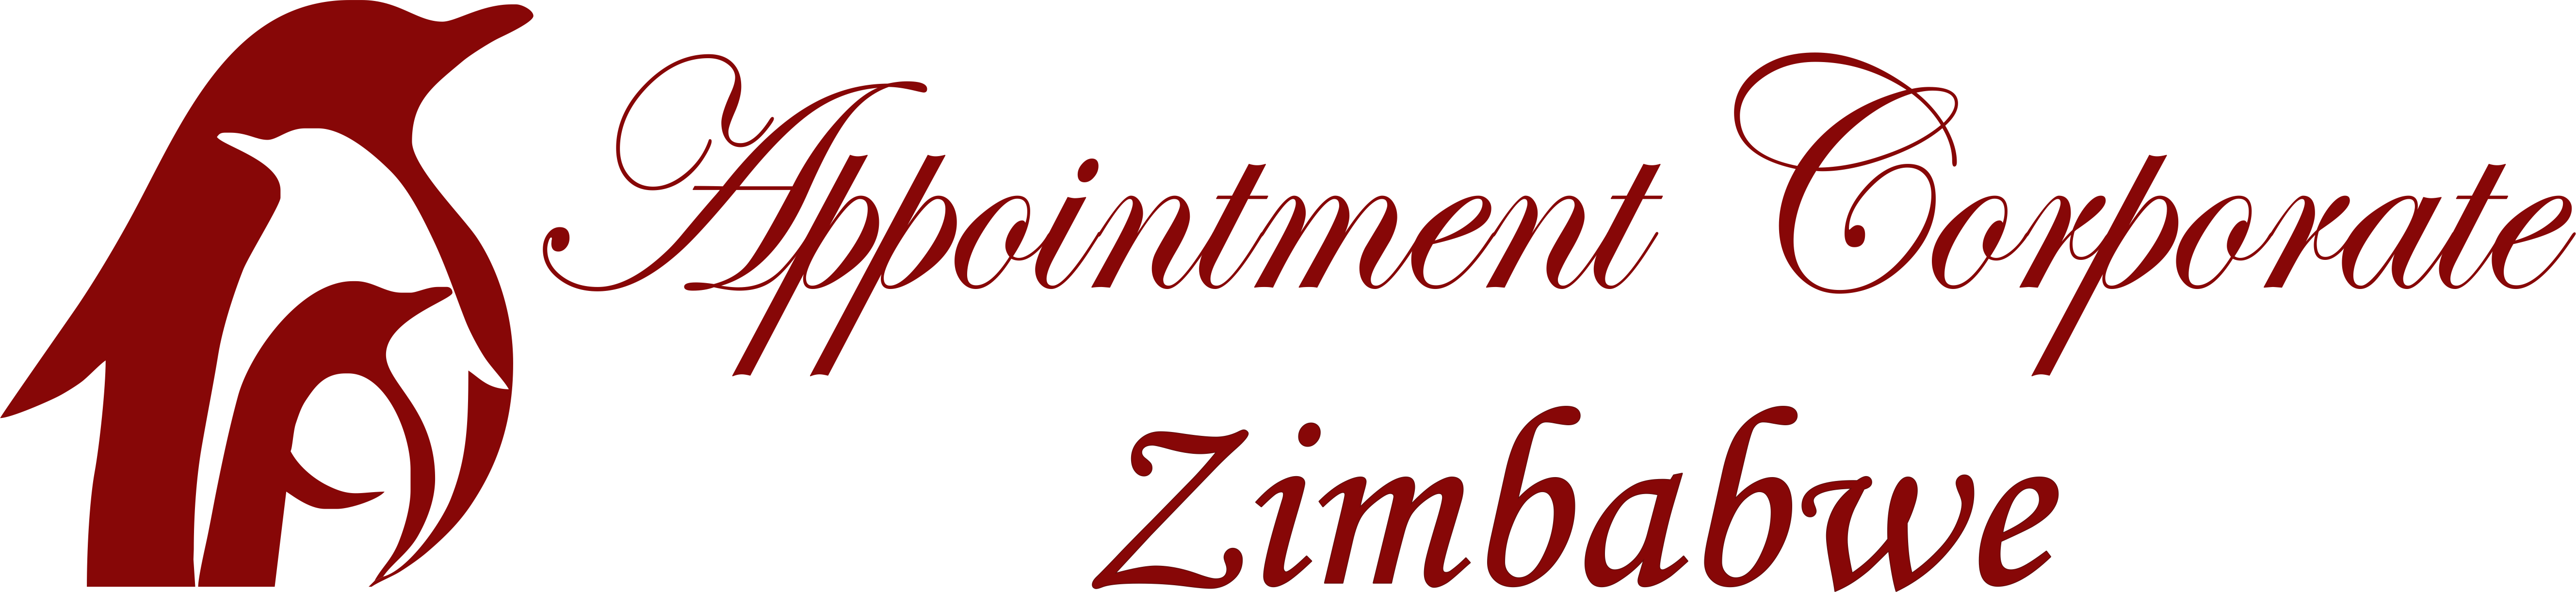 Appointment Corporate Zimbabwe